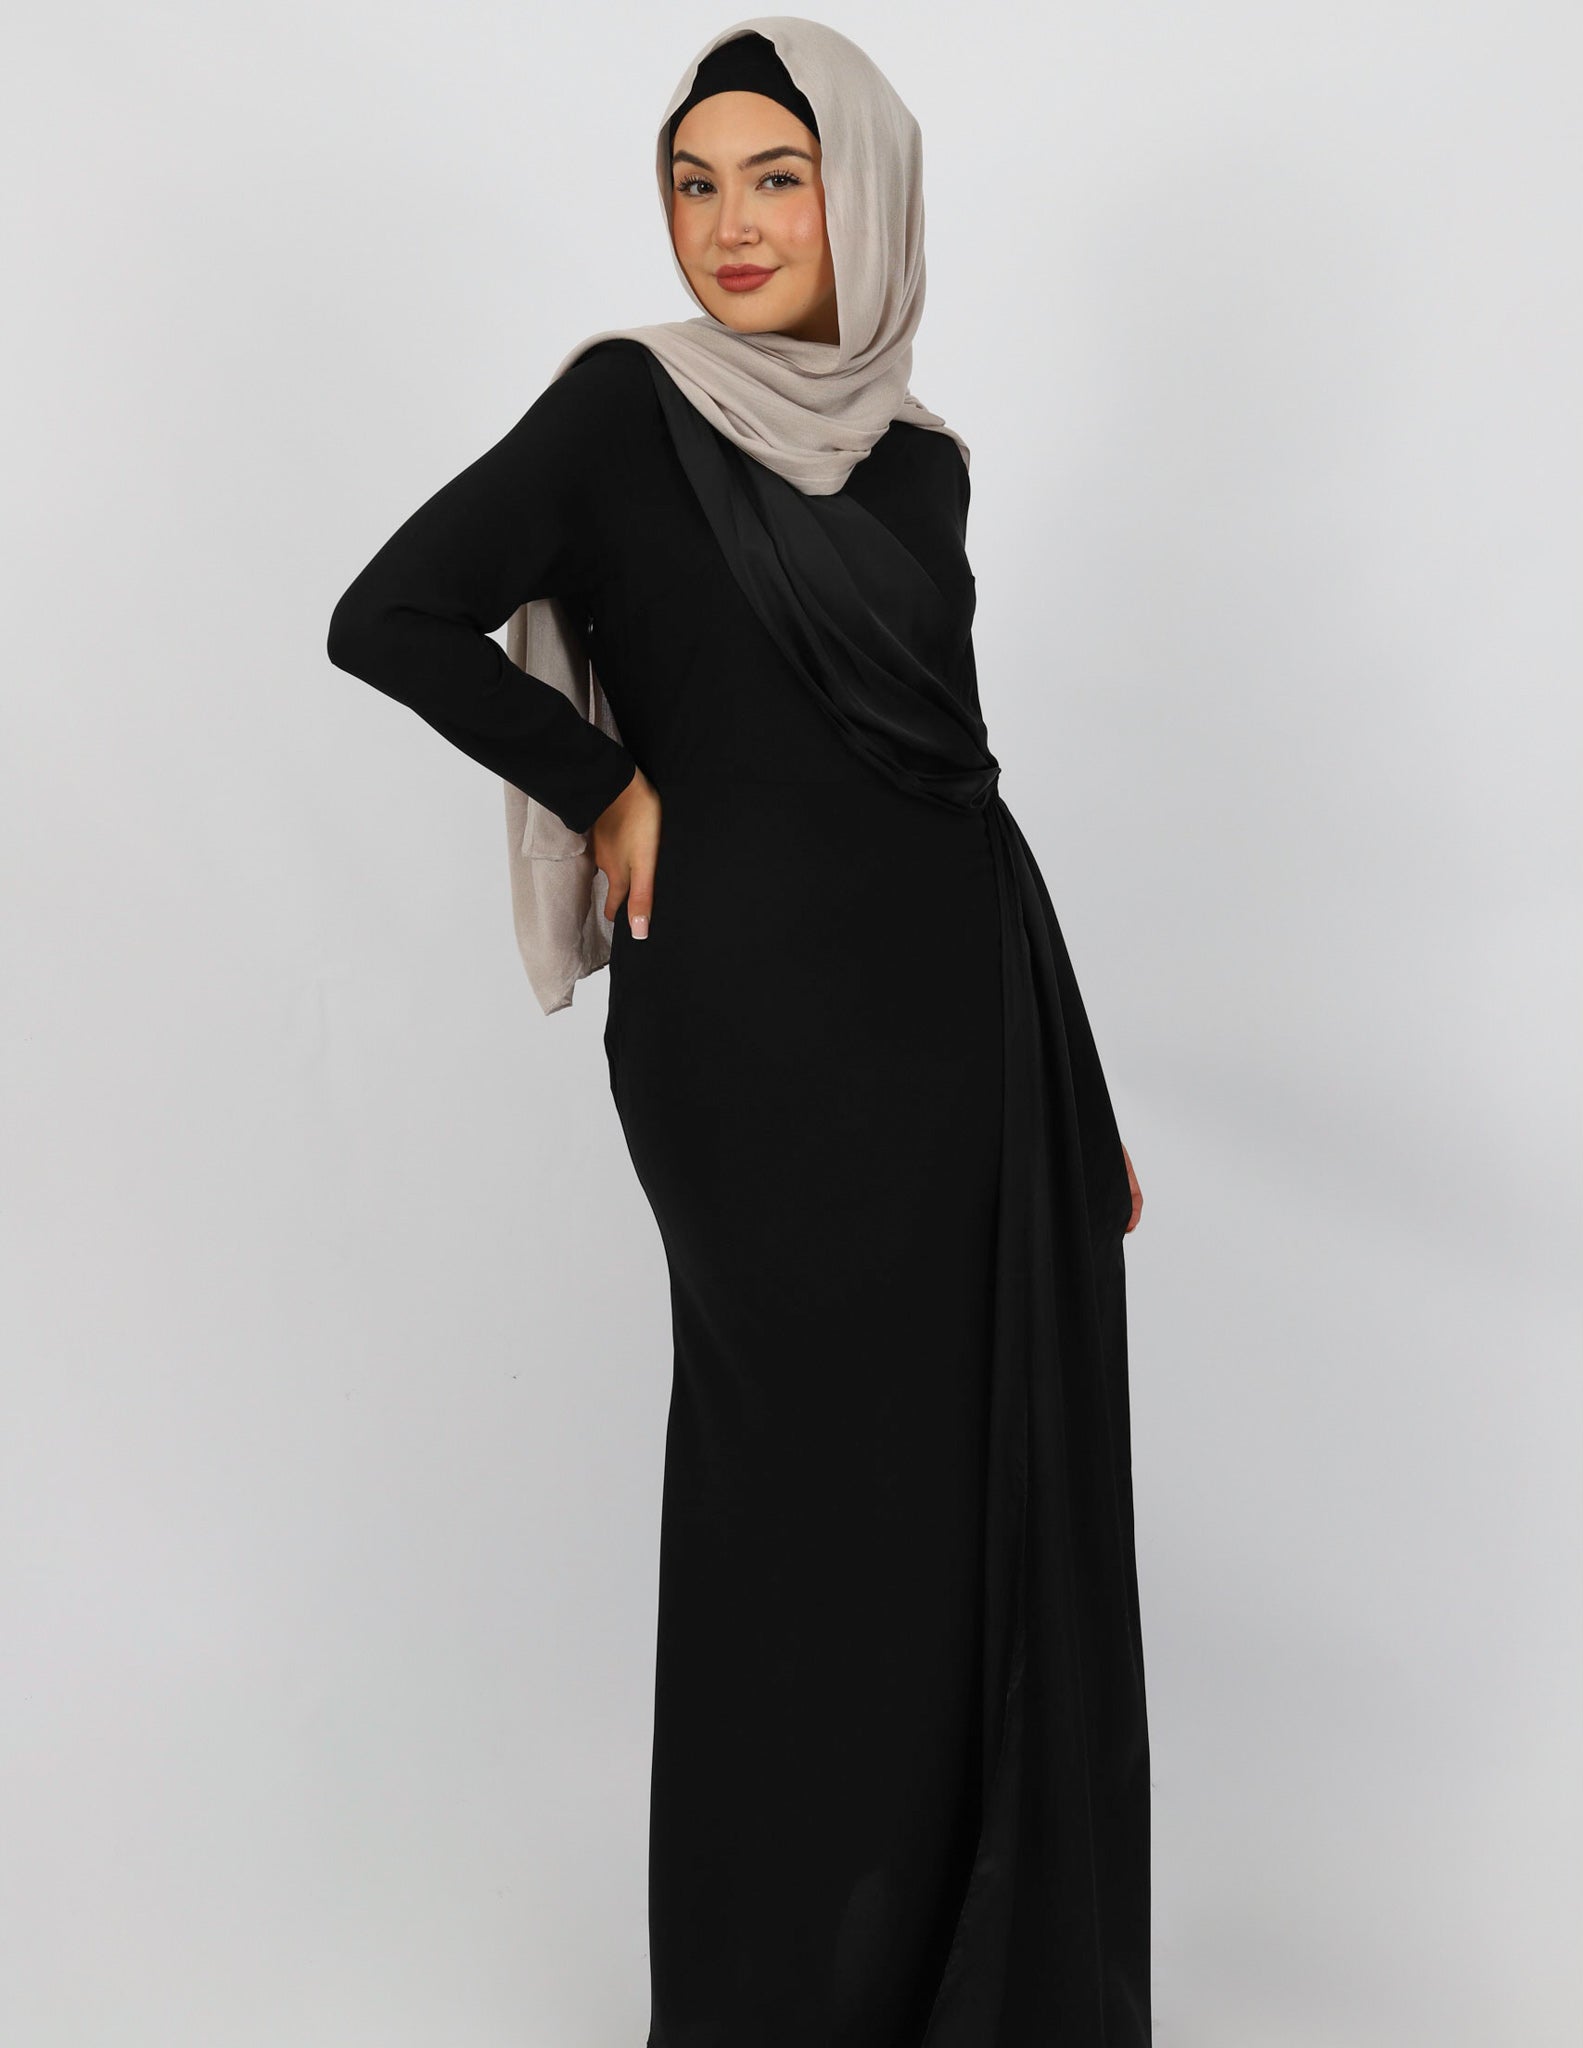 M7746Black-dress-abaya